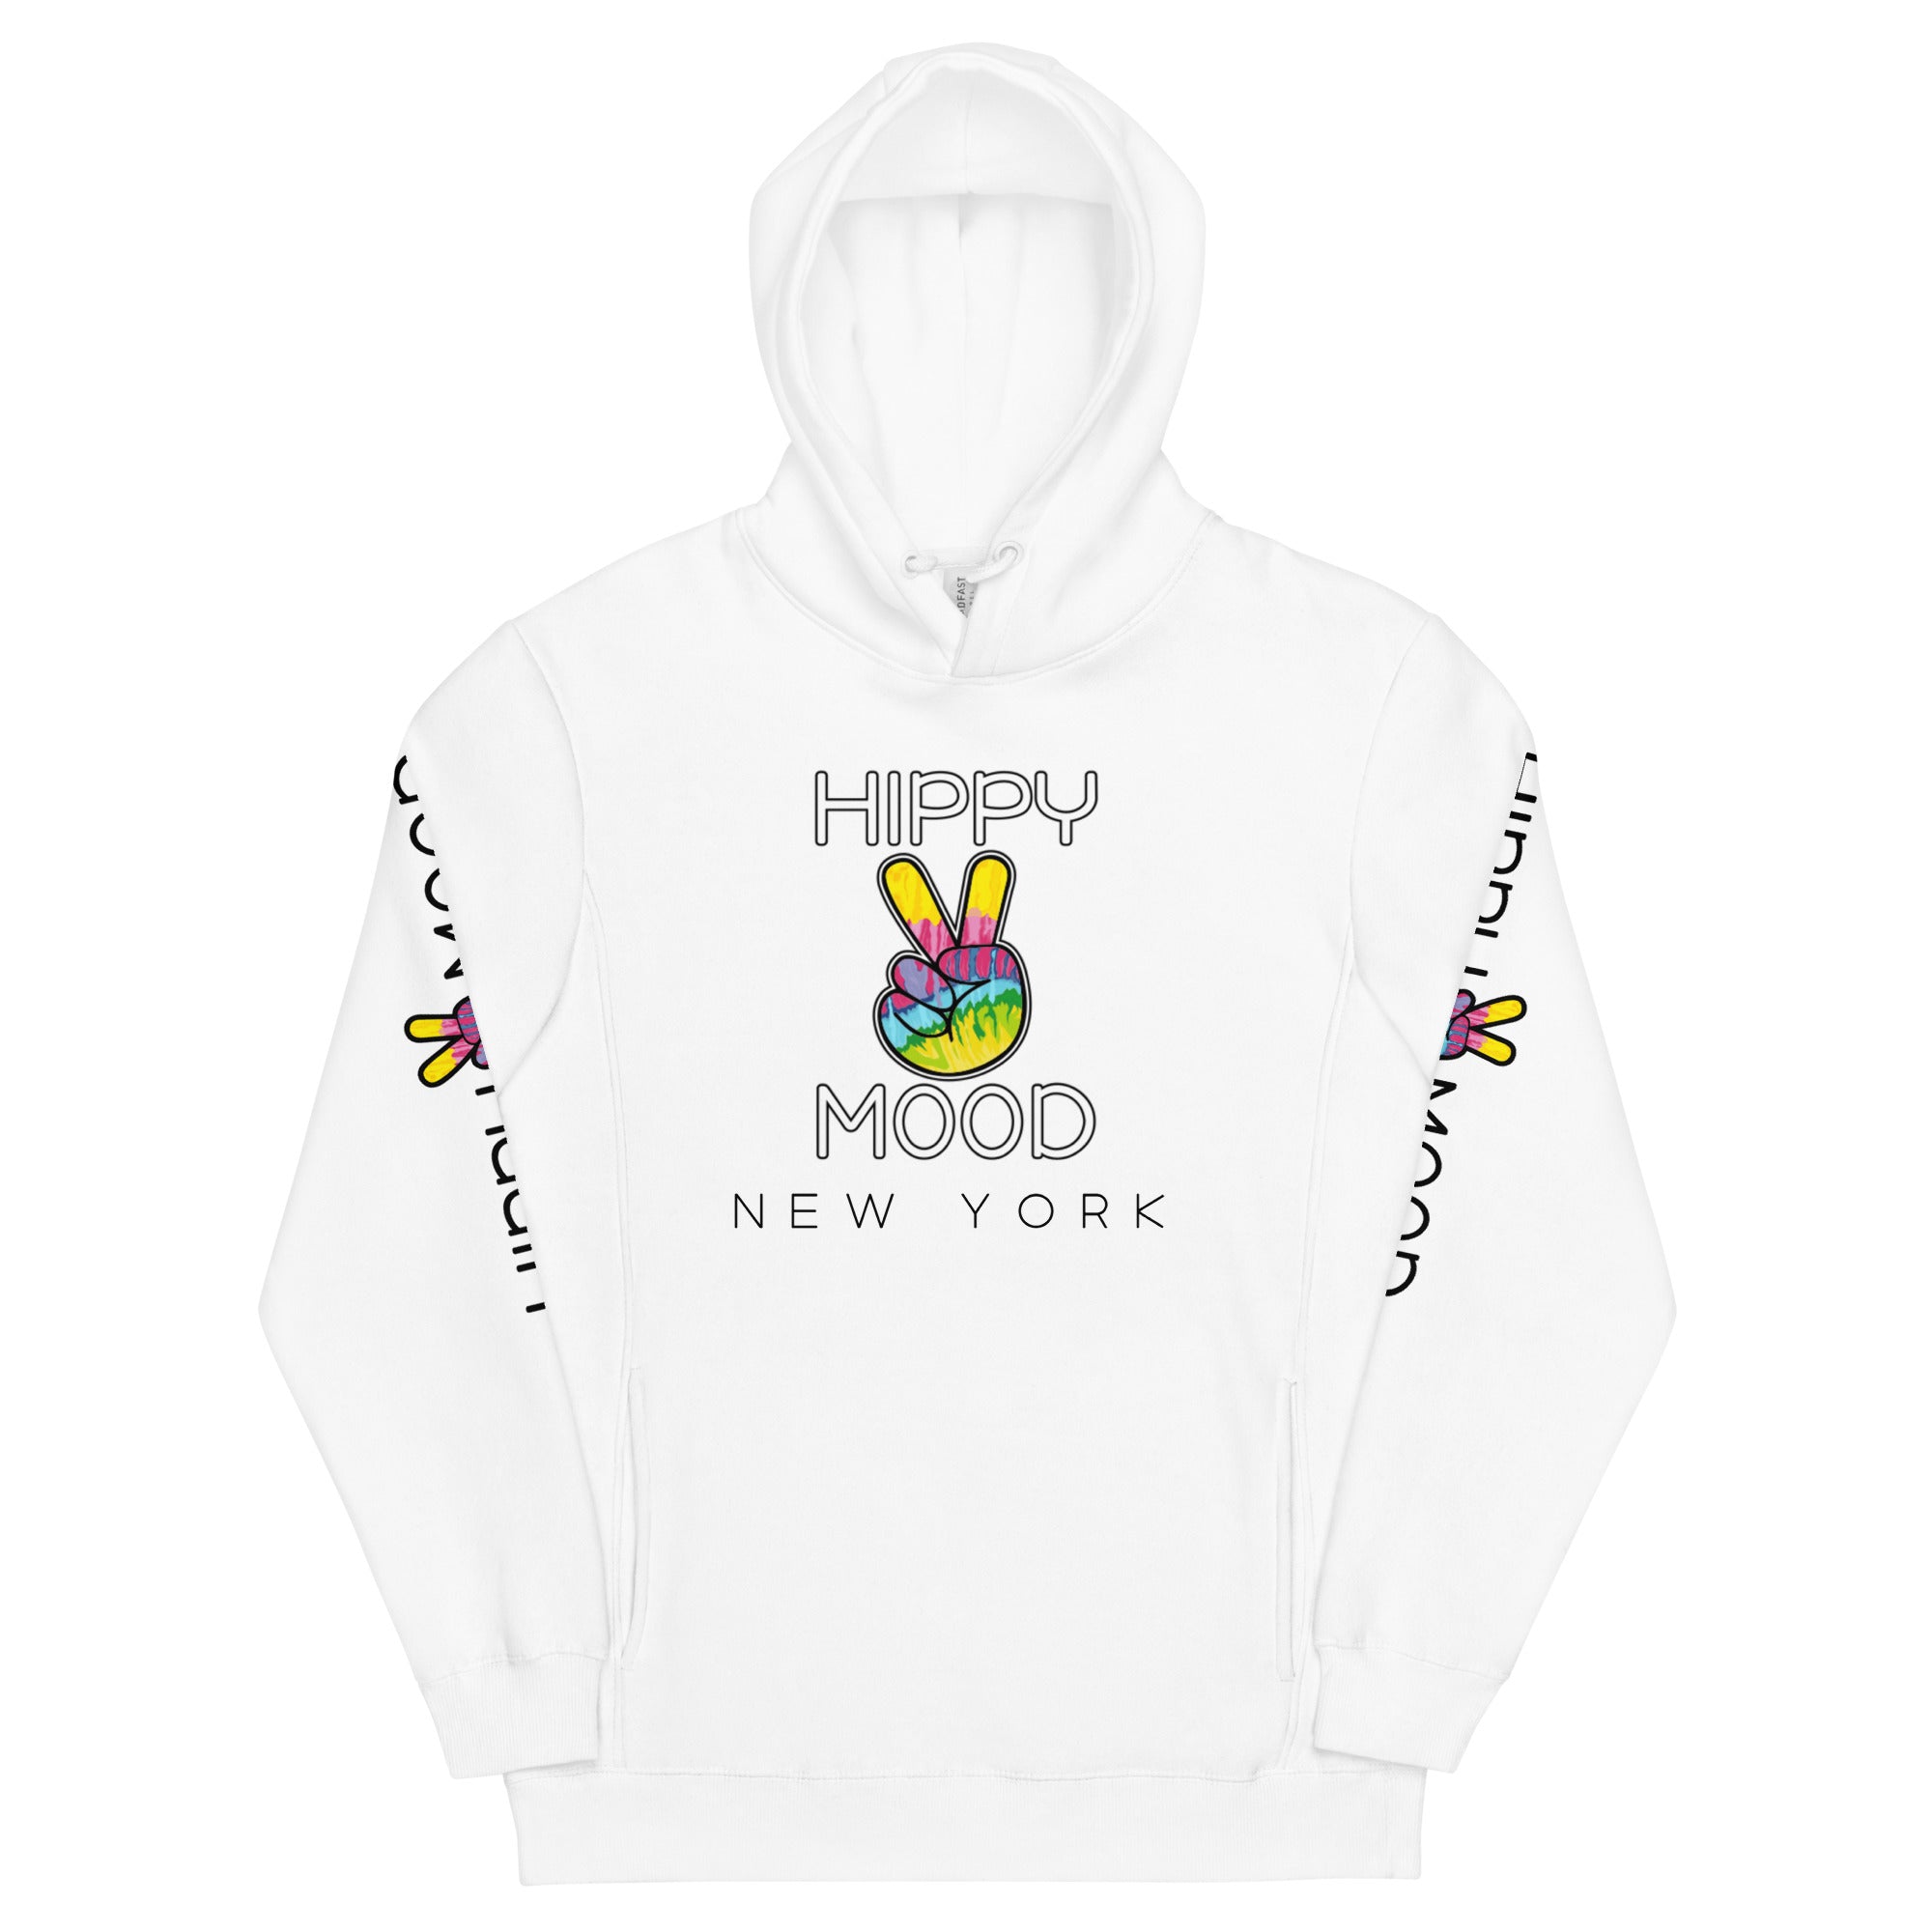 New York white hoodie